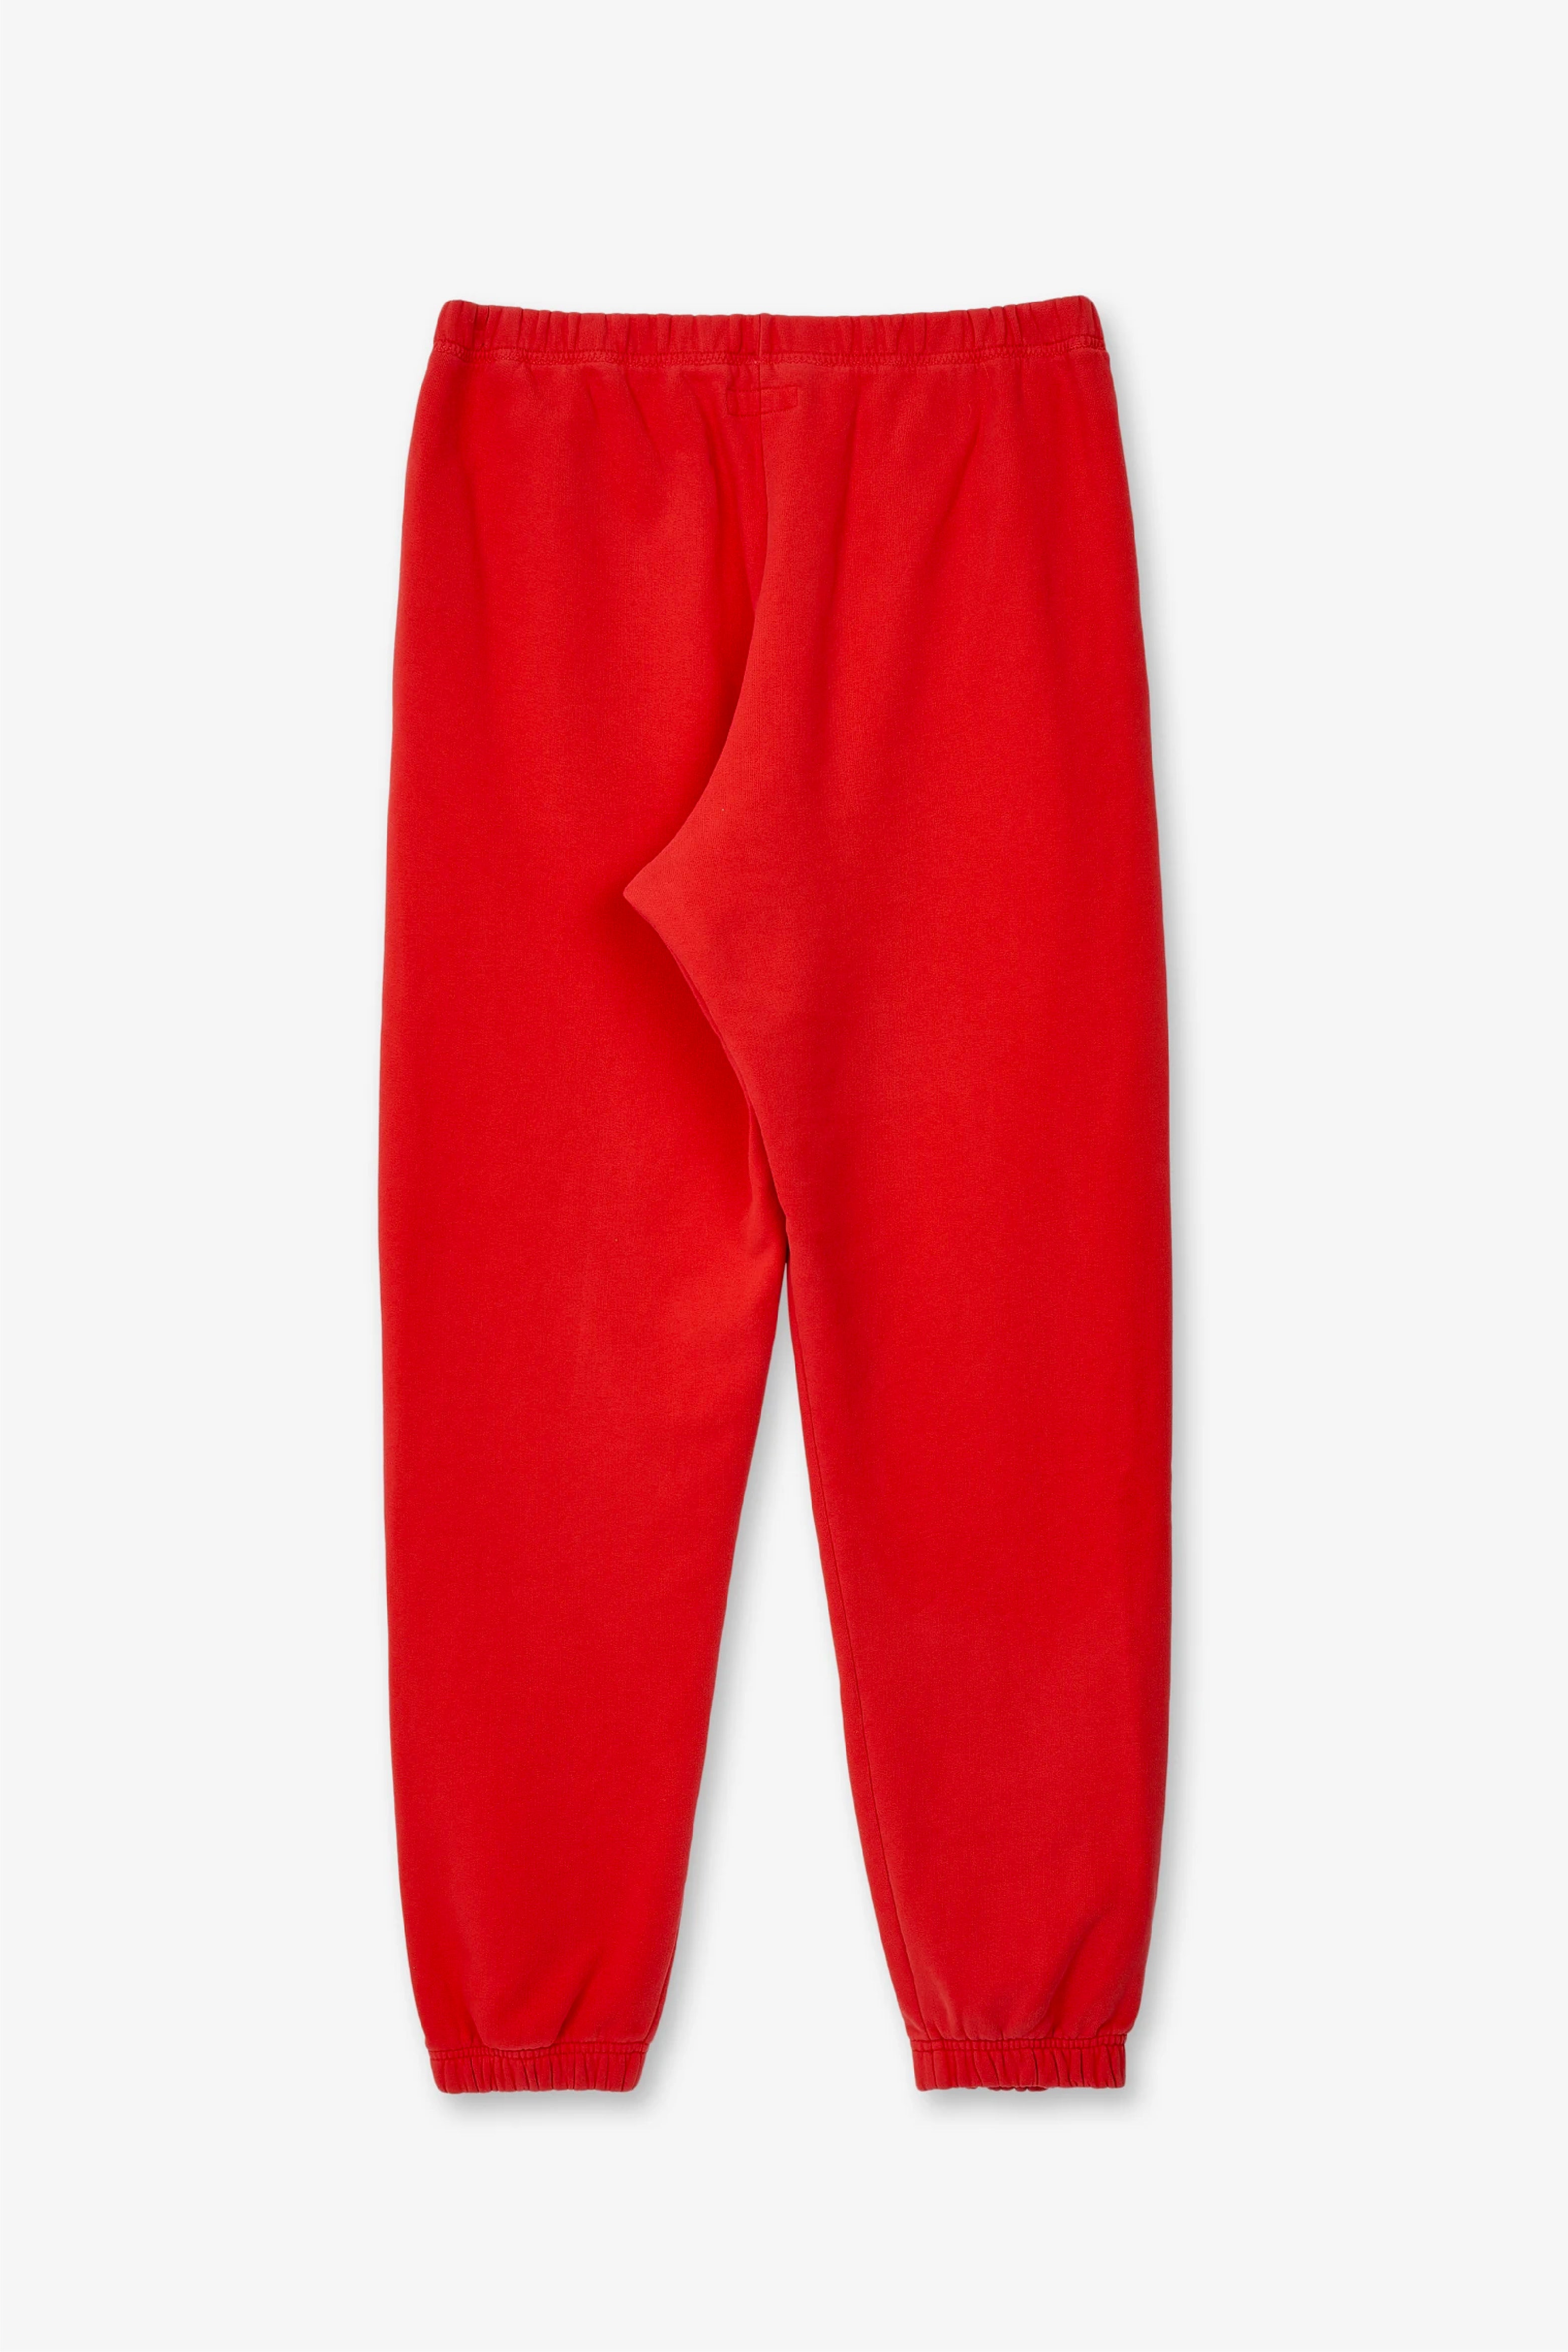 Selectshop FRAME - ERL Men's Sweatpants Knit Bottoms Dubai